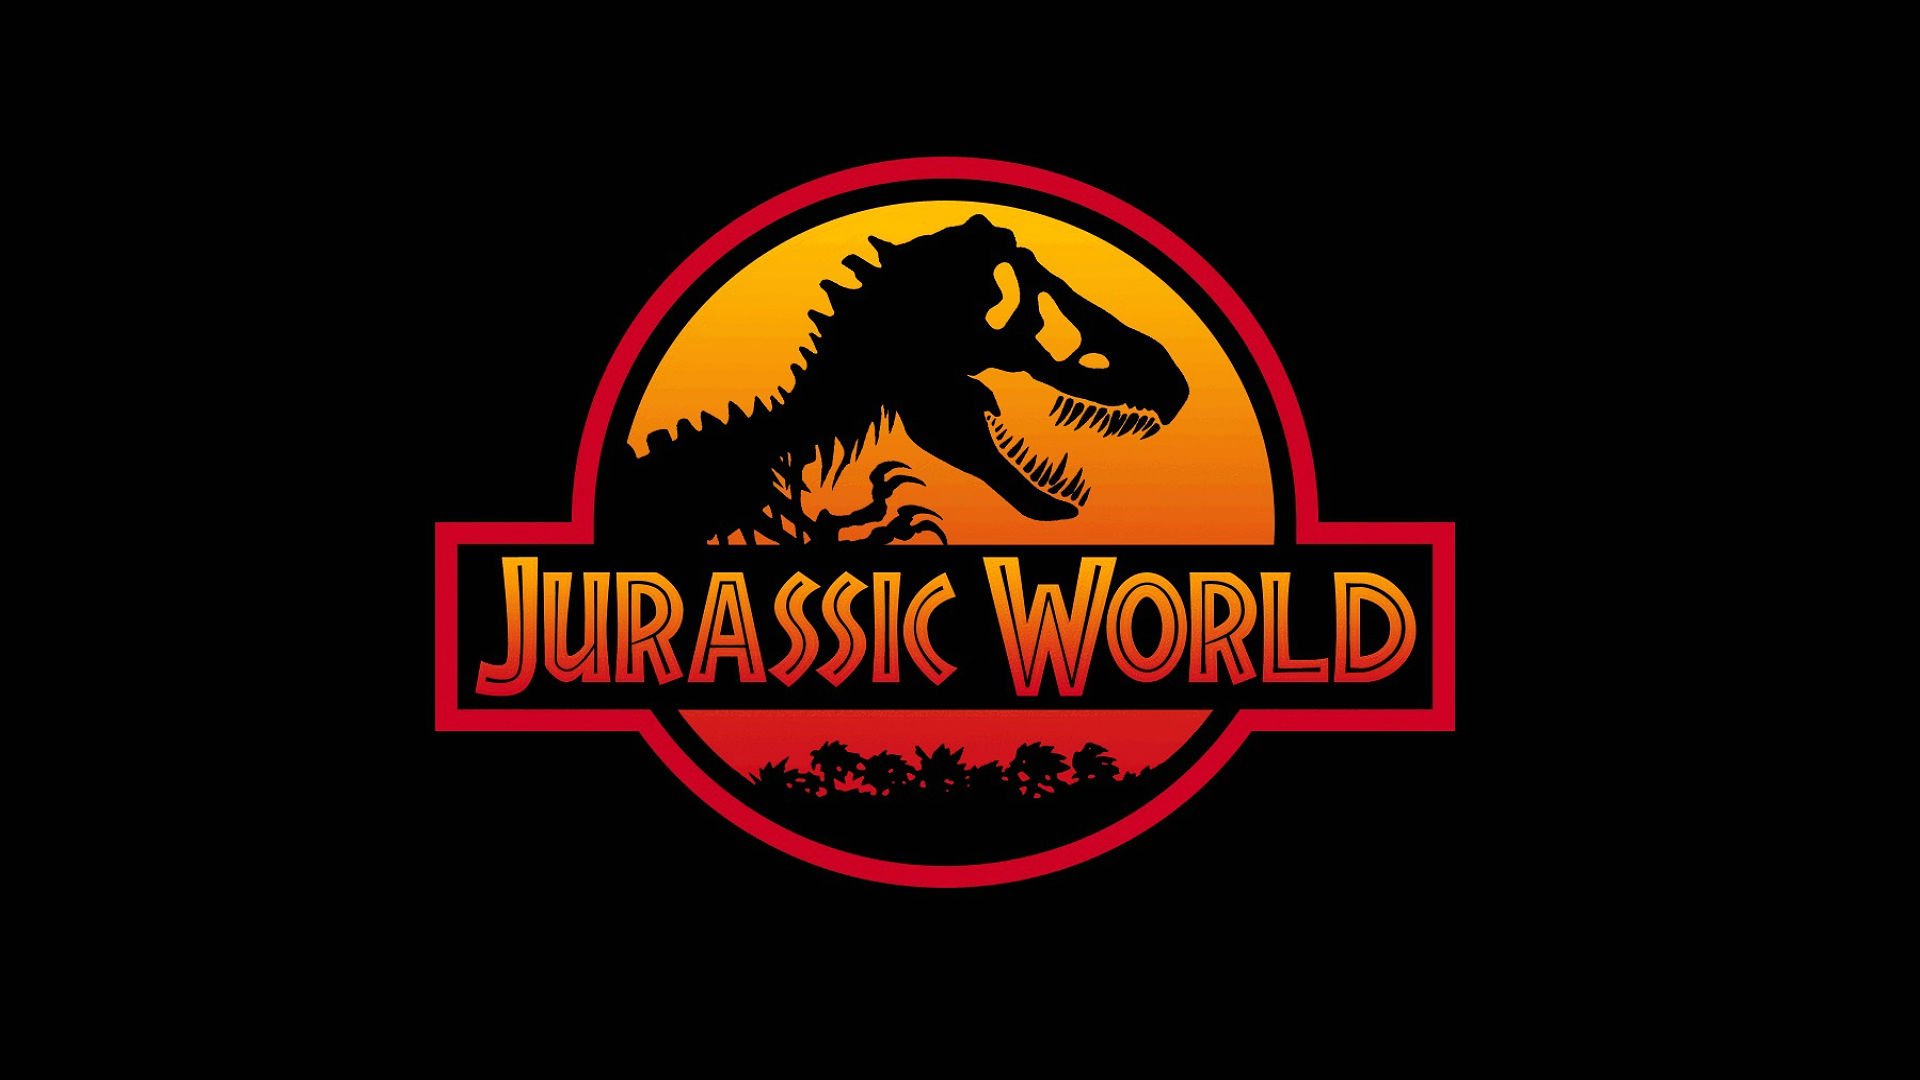 Jurassic World Movies Wallpaper HD Collections Yoanu